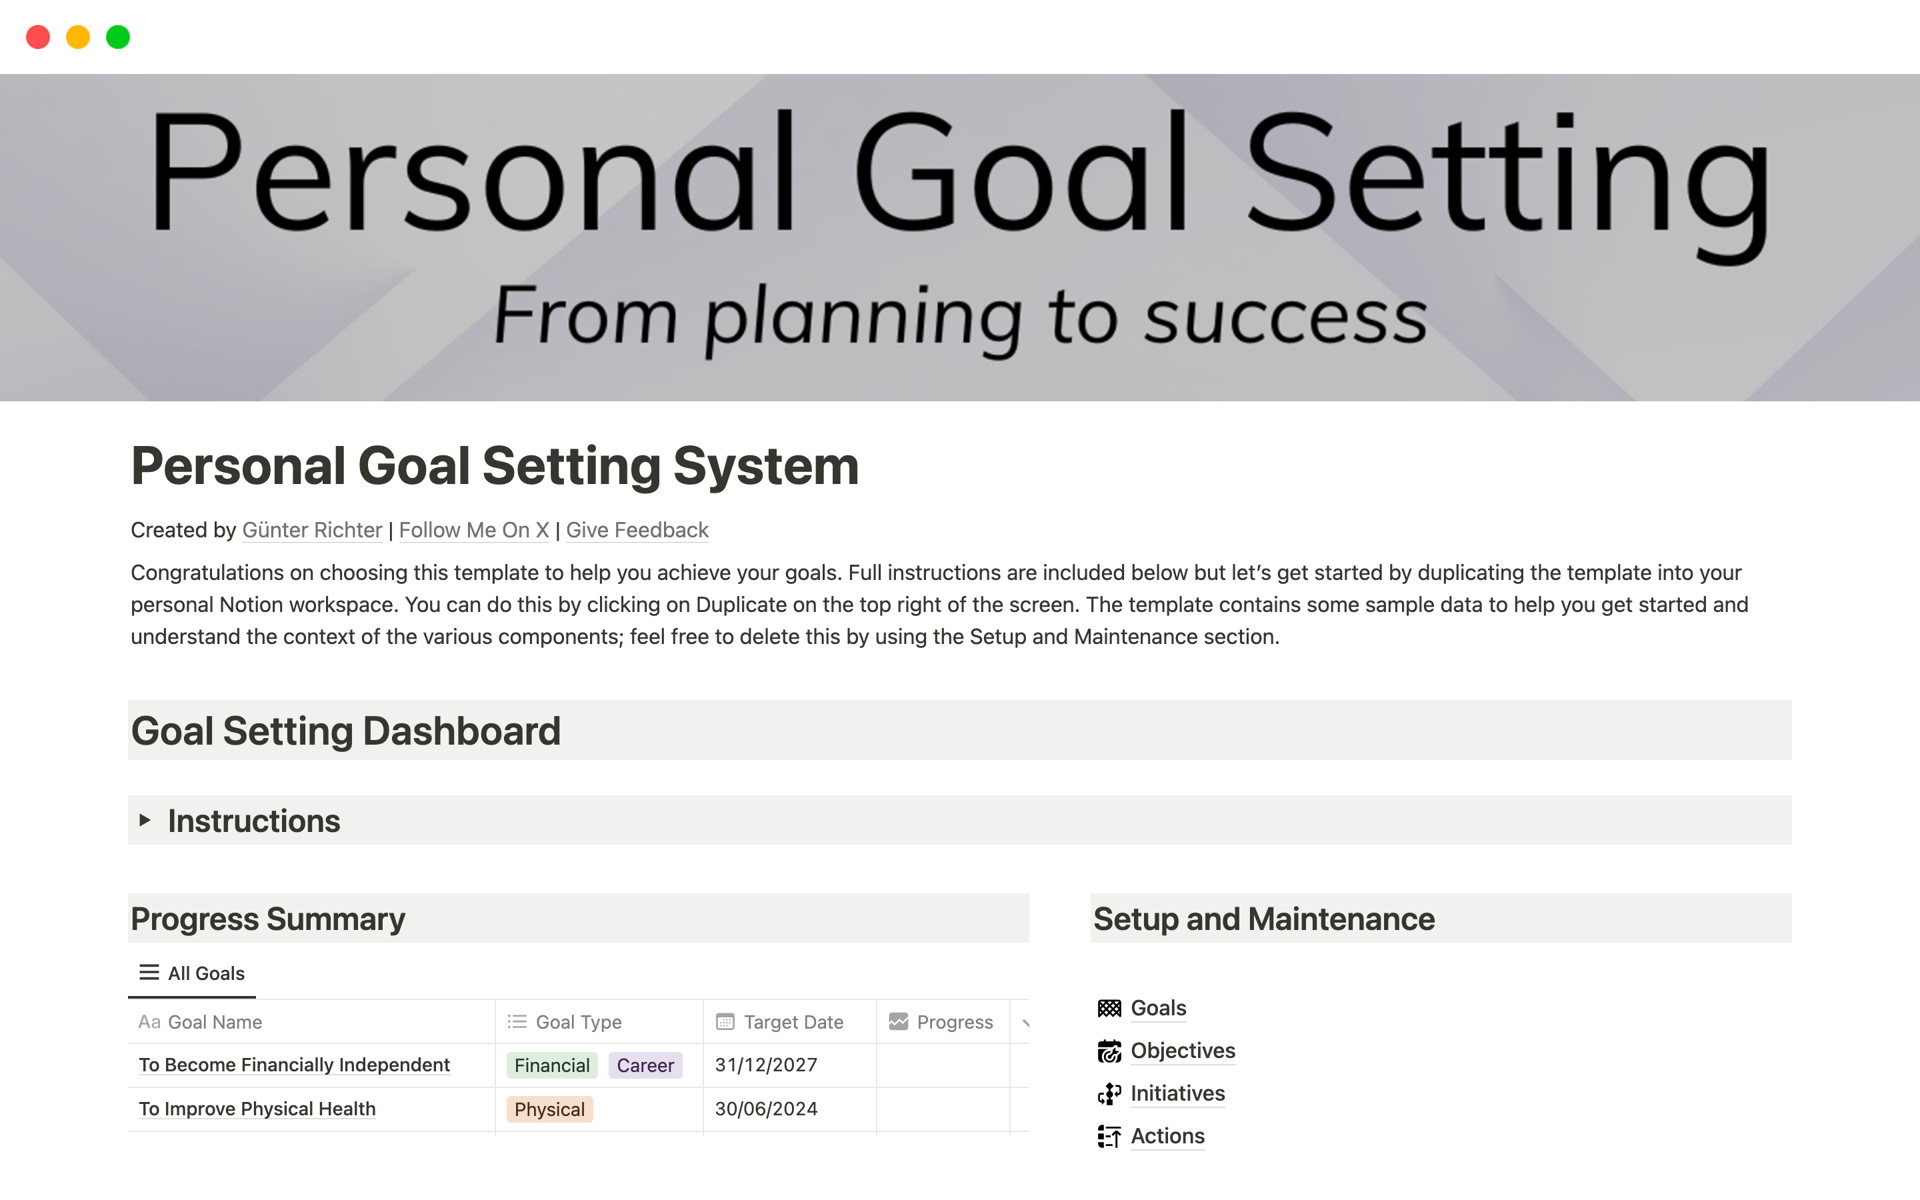 Aperçu du modèle de Personal Goal Setting System